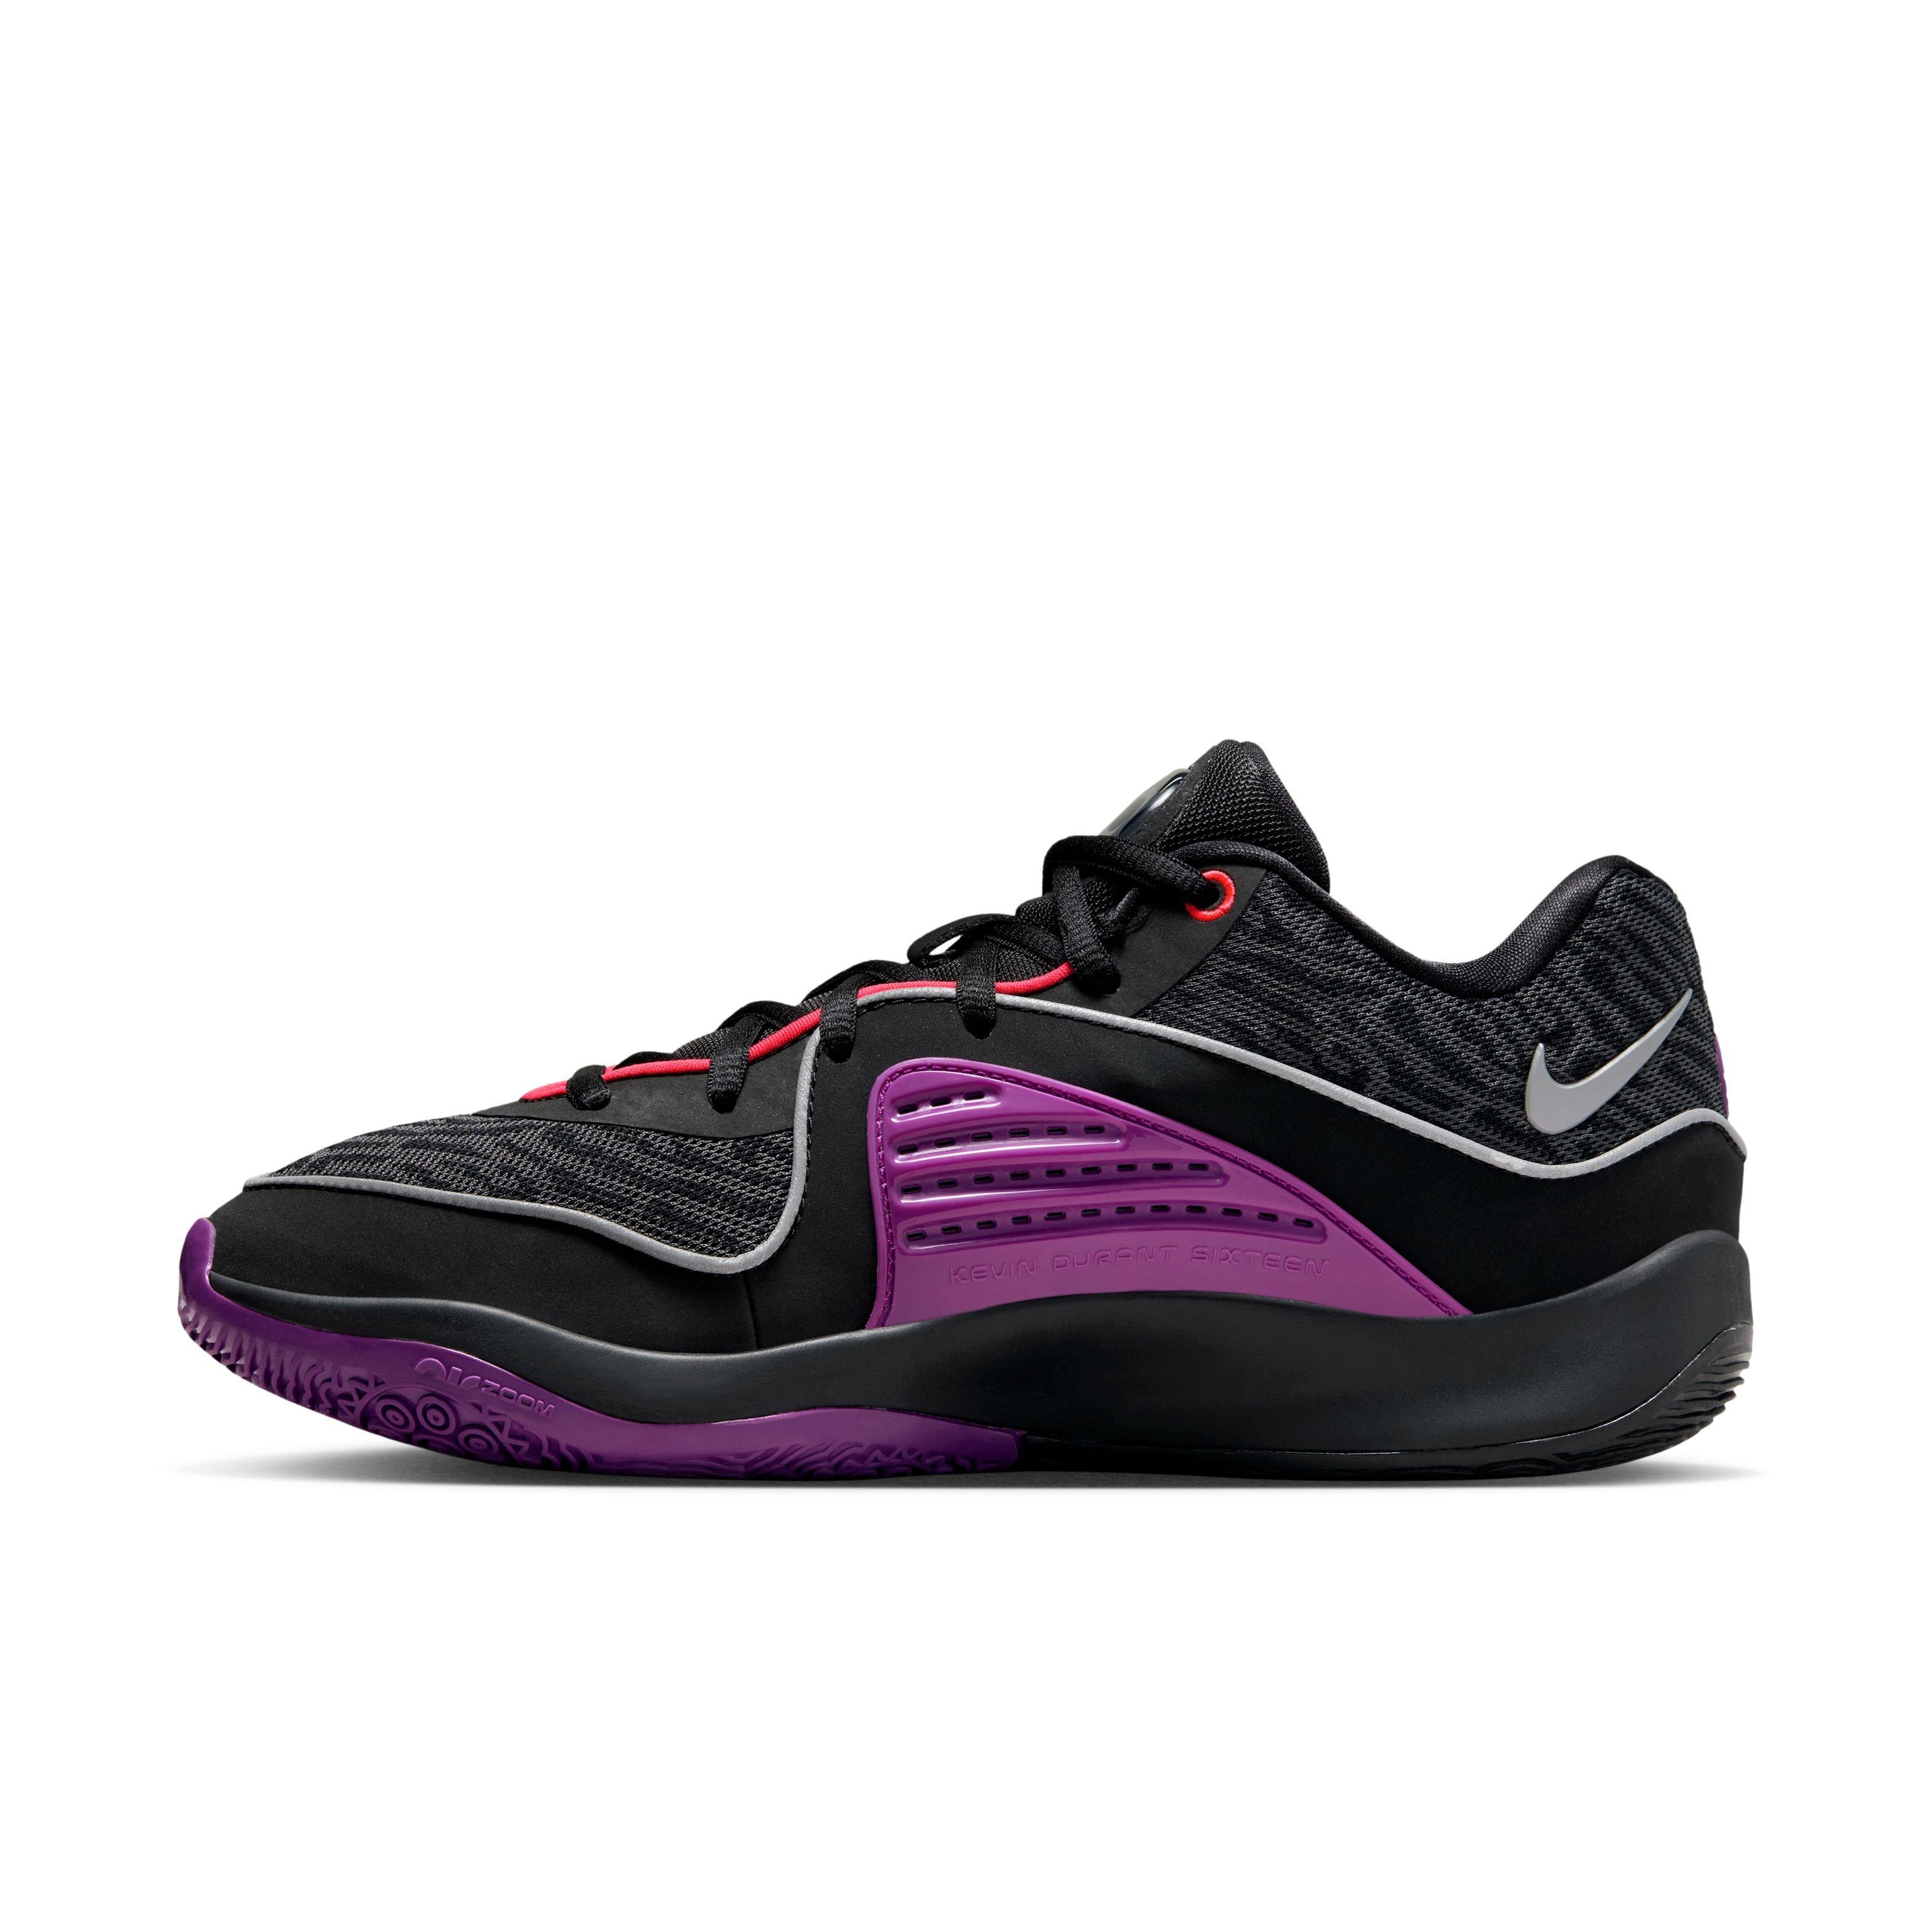 Nike KD16 “Pathway Royalties” Men's Basketball Shoe